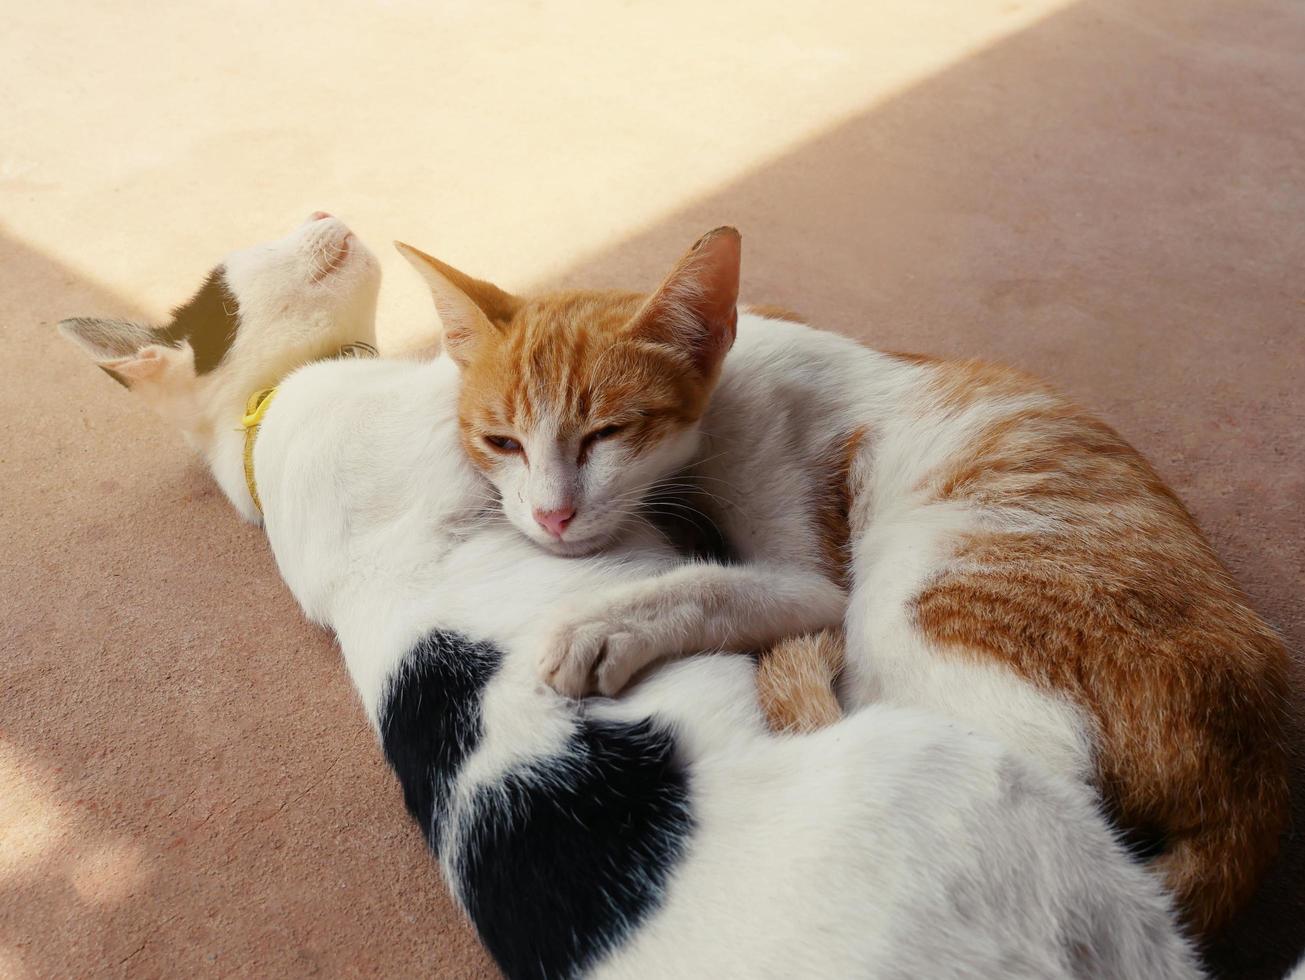 el abrazo de los gatos lindos muestra calidez, intimidad, confianza, alegría. foto